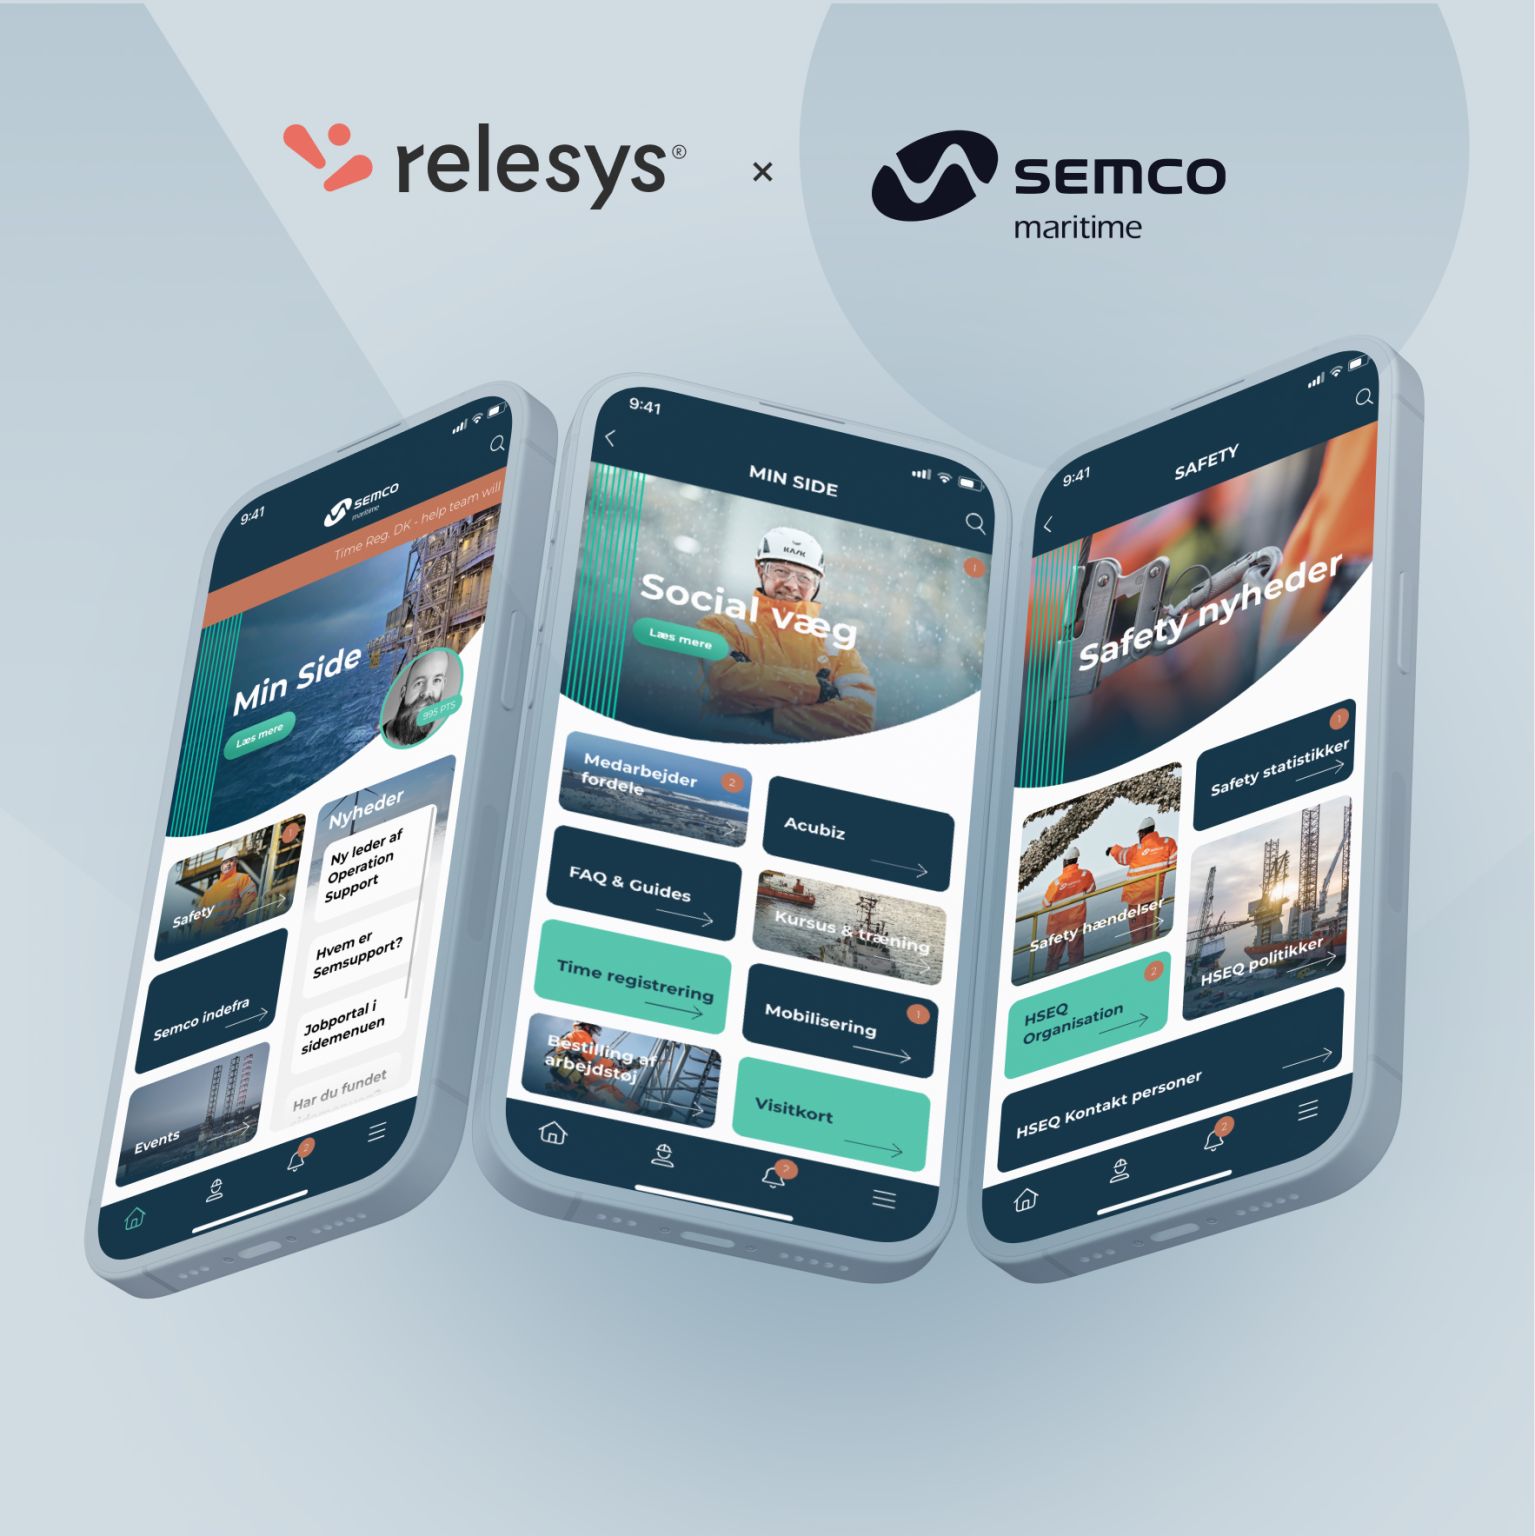 relesys-semco-maritime-app-launch